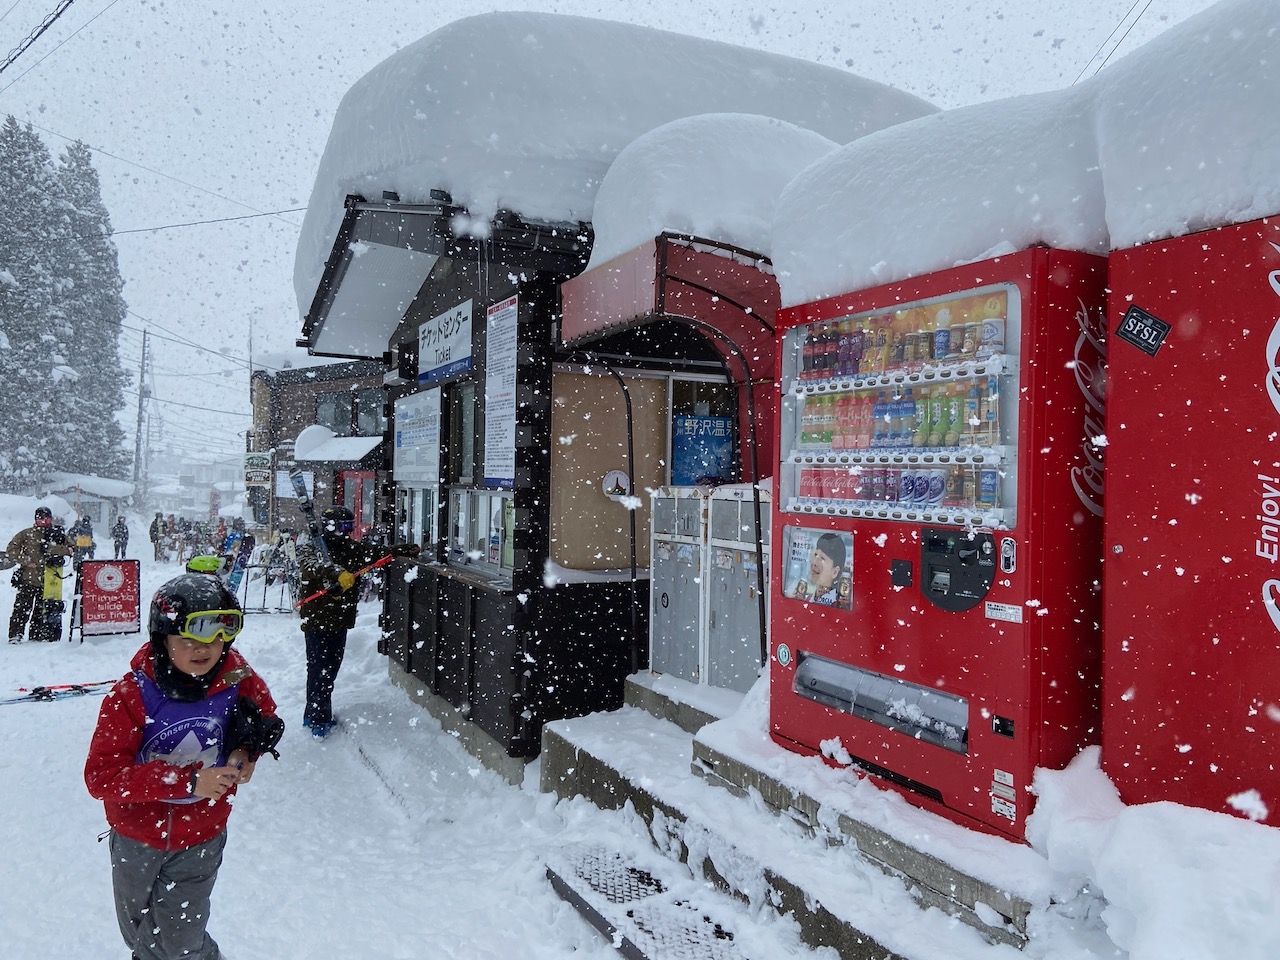 Nozawa Ski Season Wrap 2020